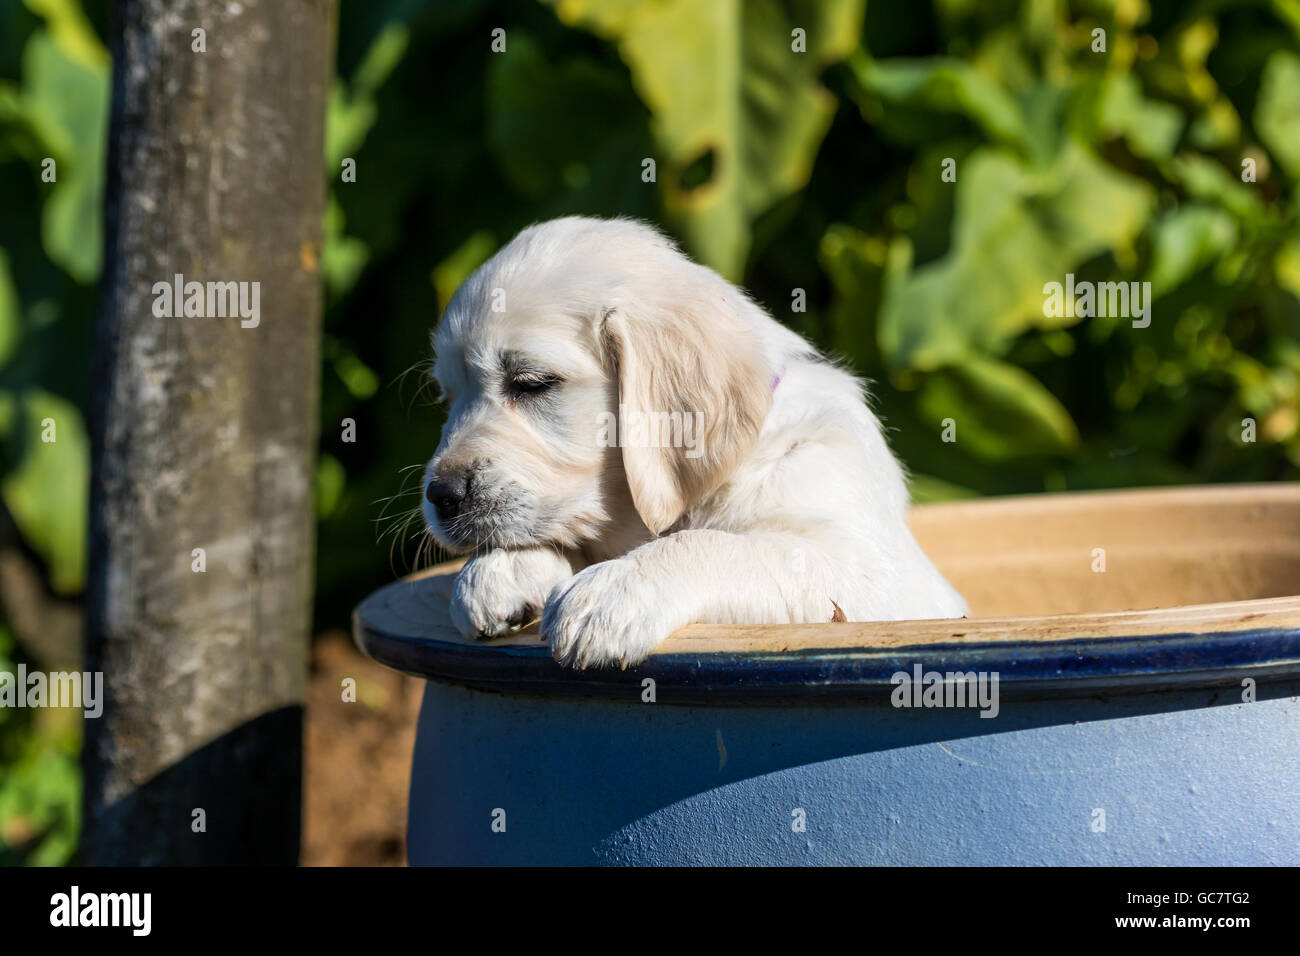 Golden Retriever cuccioli in una ciotola in un giardino Foto Stock